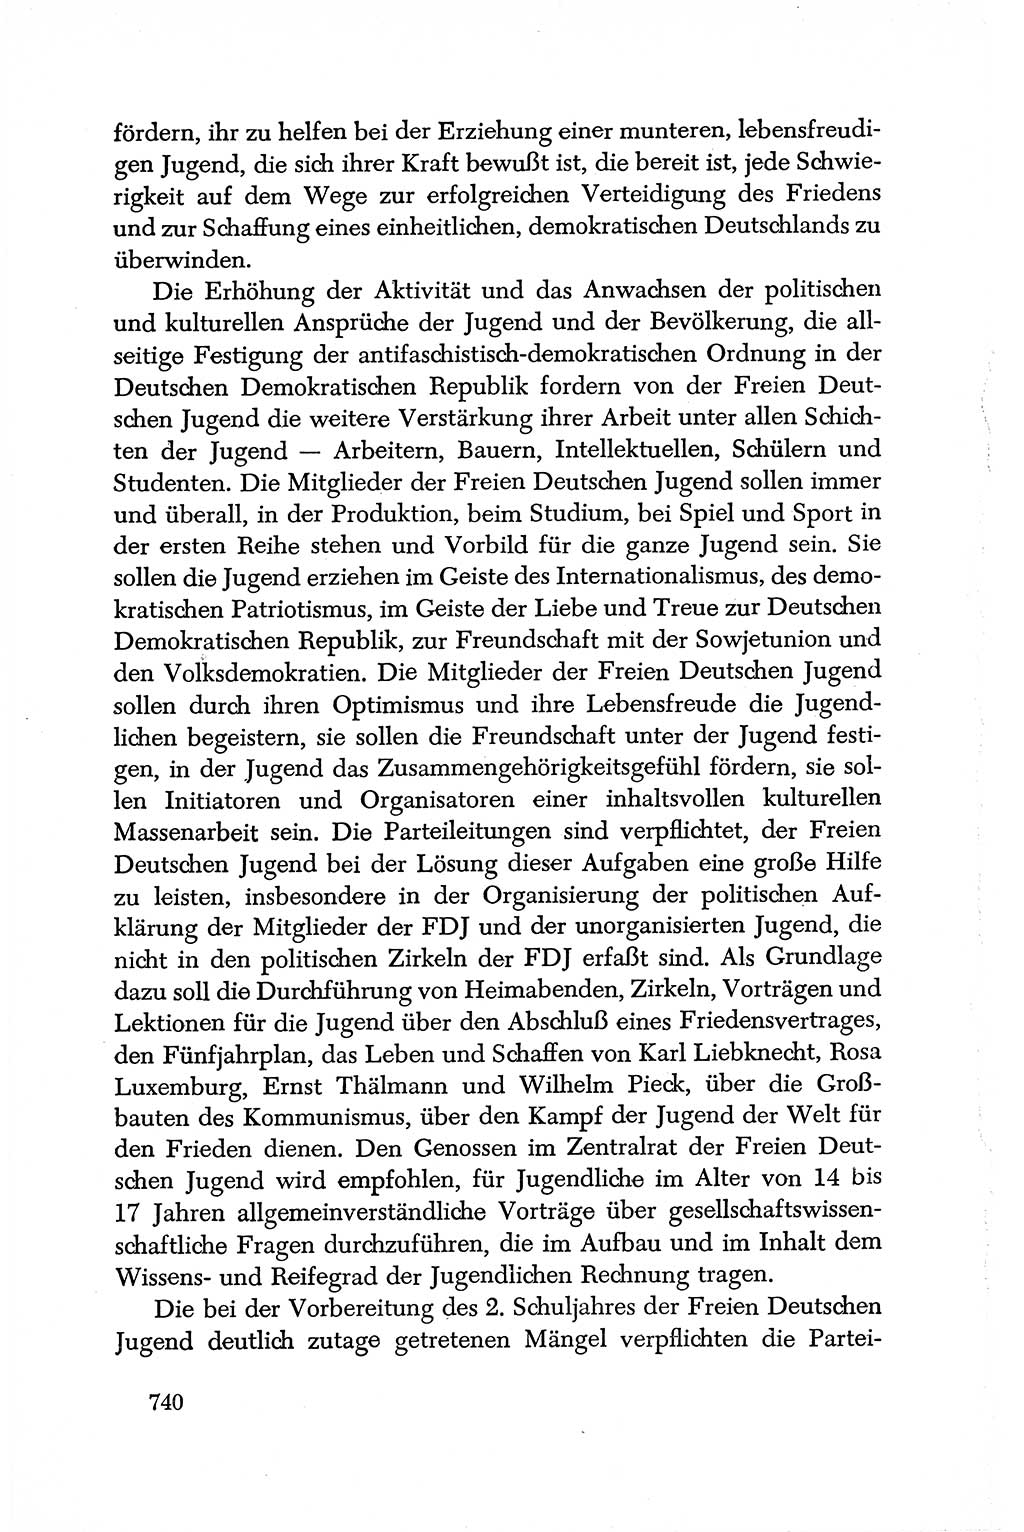 Dokumente der Sozialistischen Einheitspartei Deutschlands (SED) [Deutsche Demokratische Republik (DDR)] 1950-1952, Seite 740 (Dok. SED DDR 1950-1952, S. 740)